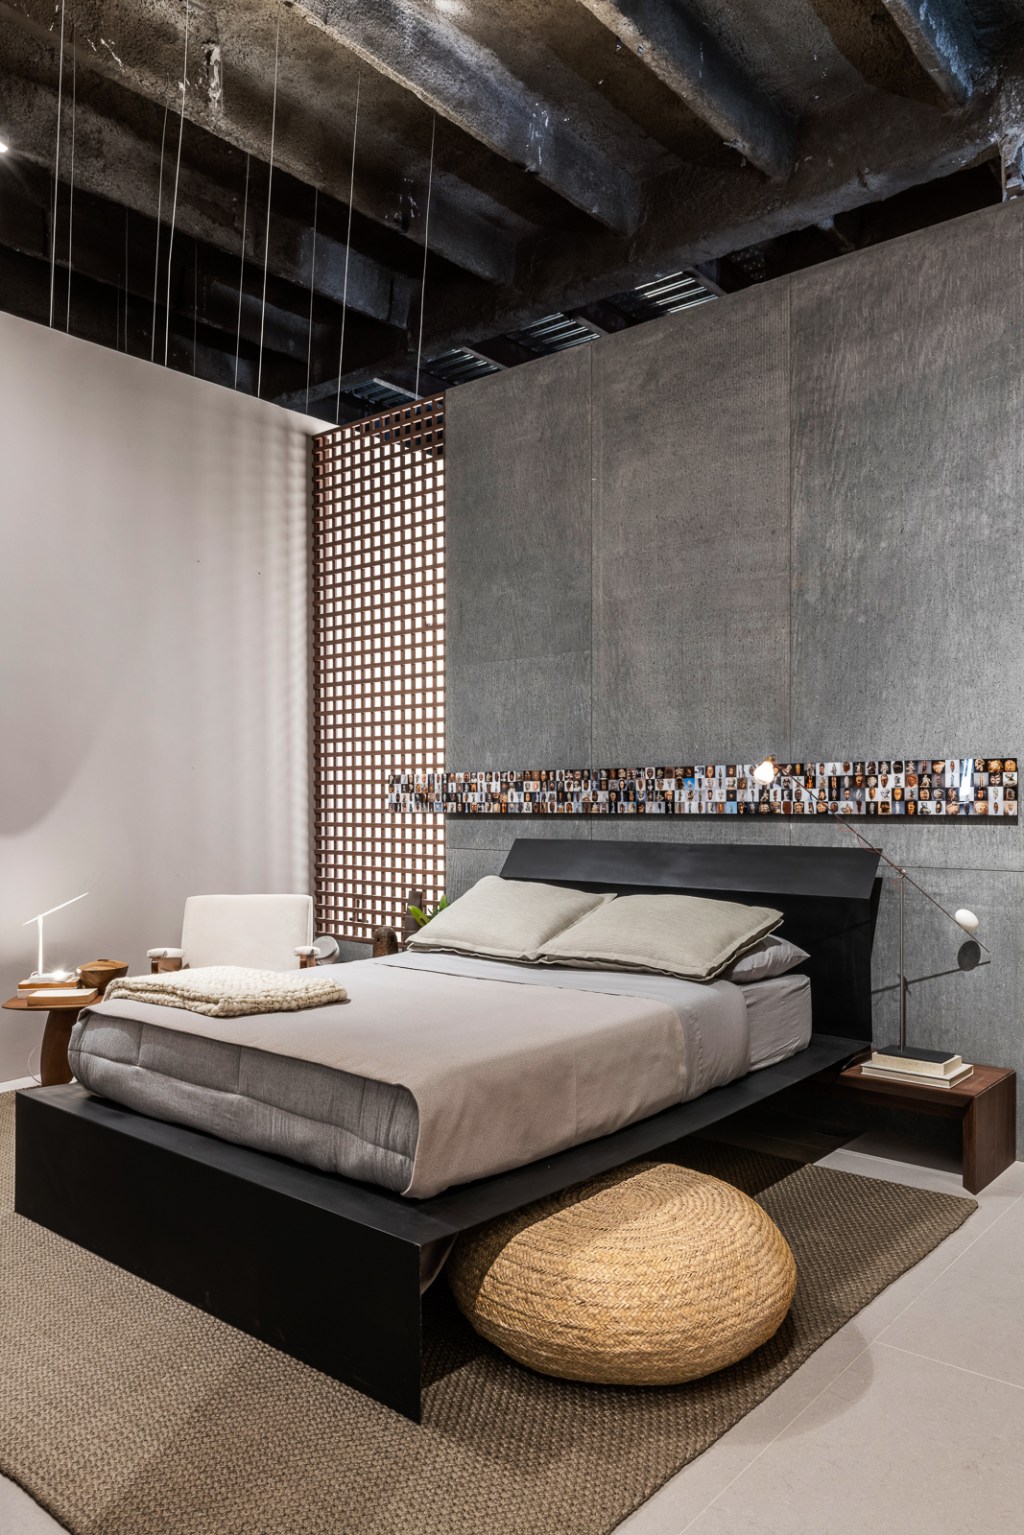 gustavo martins loft um casacor sao paulo mostras decoracao design cama quarto tapete luminaria